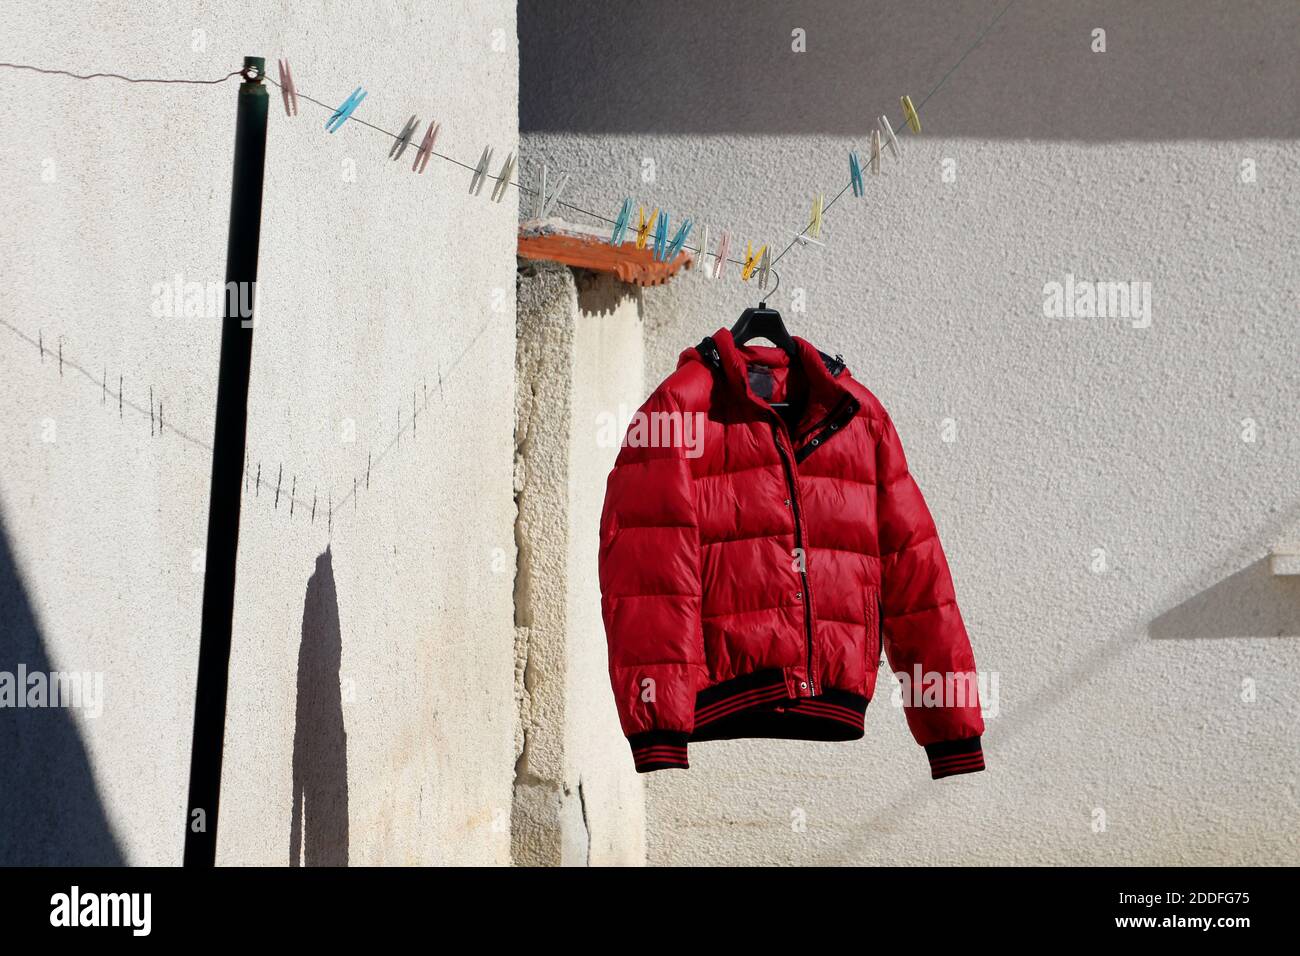 Veste d'hiver rouge vif fraîchement lavée pour sécher cintre attaché à la corde à linge remplie de cloespins dans divers couleurs dans la maison familiale Banque D'Images